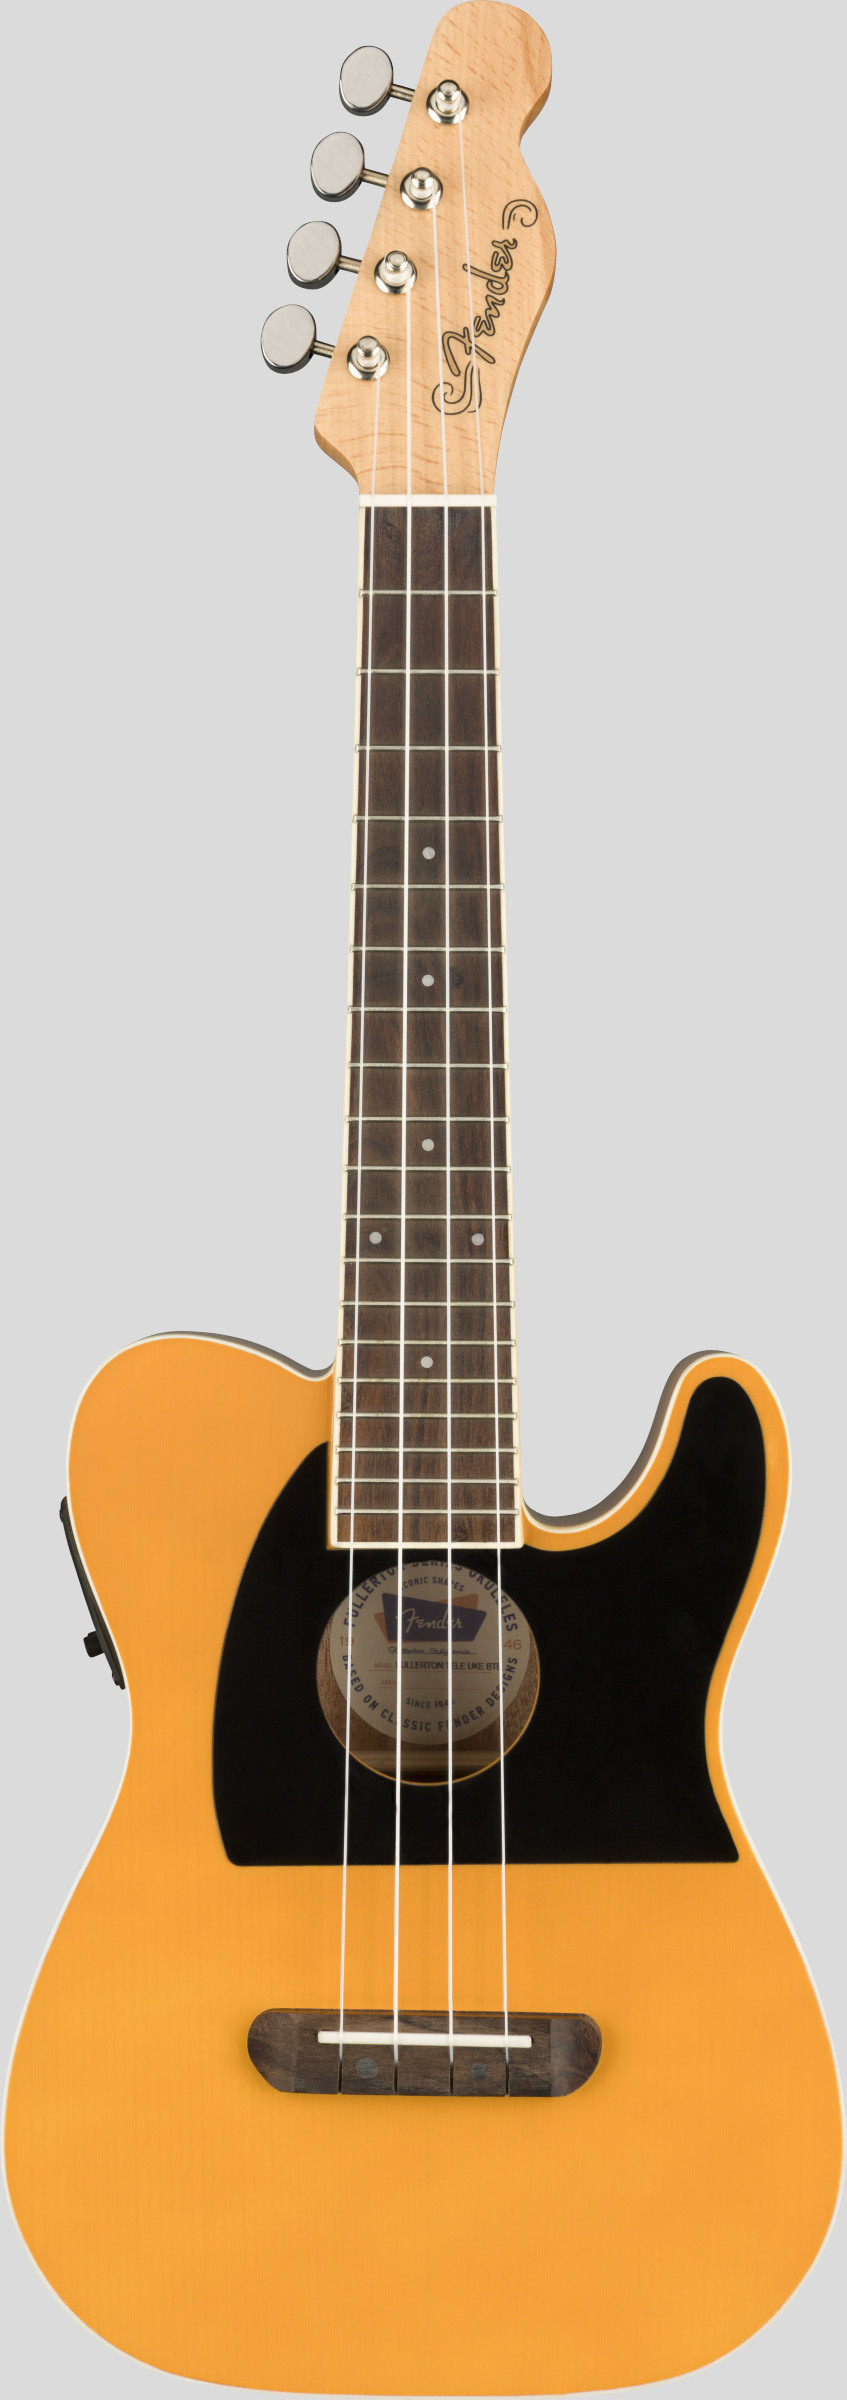 Fender Fullerton Telecaster Concert Ukulele Butterscotch Blonde 1